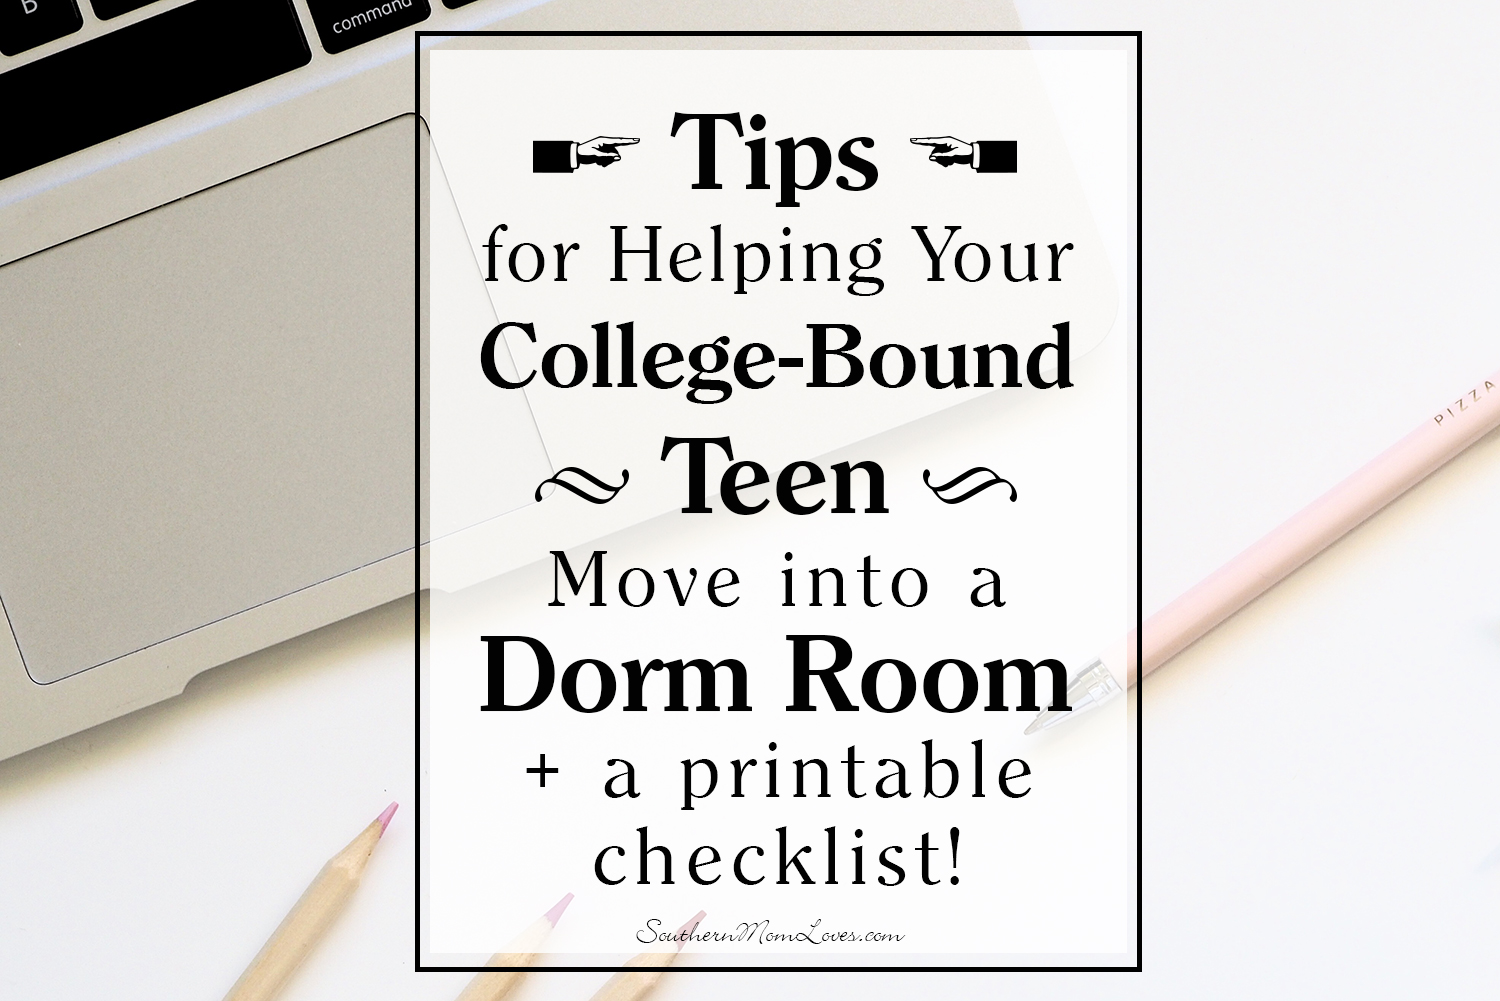 Move-In Checklist  Move in checklist, College dorm checklist